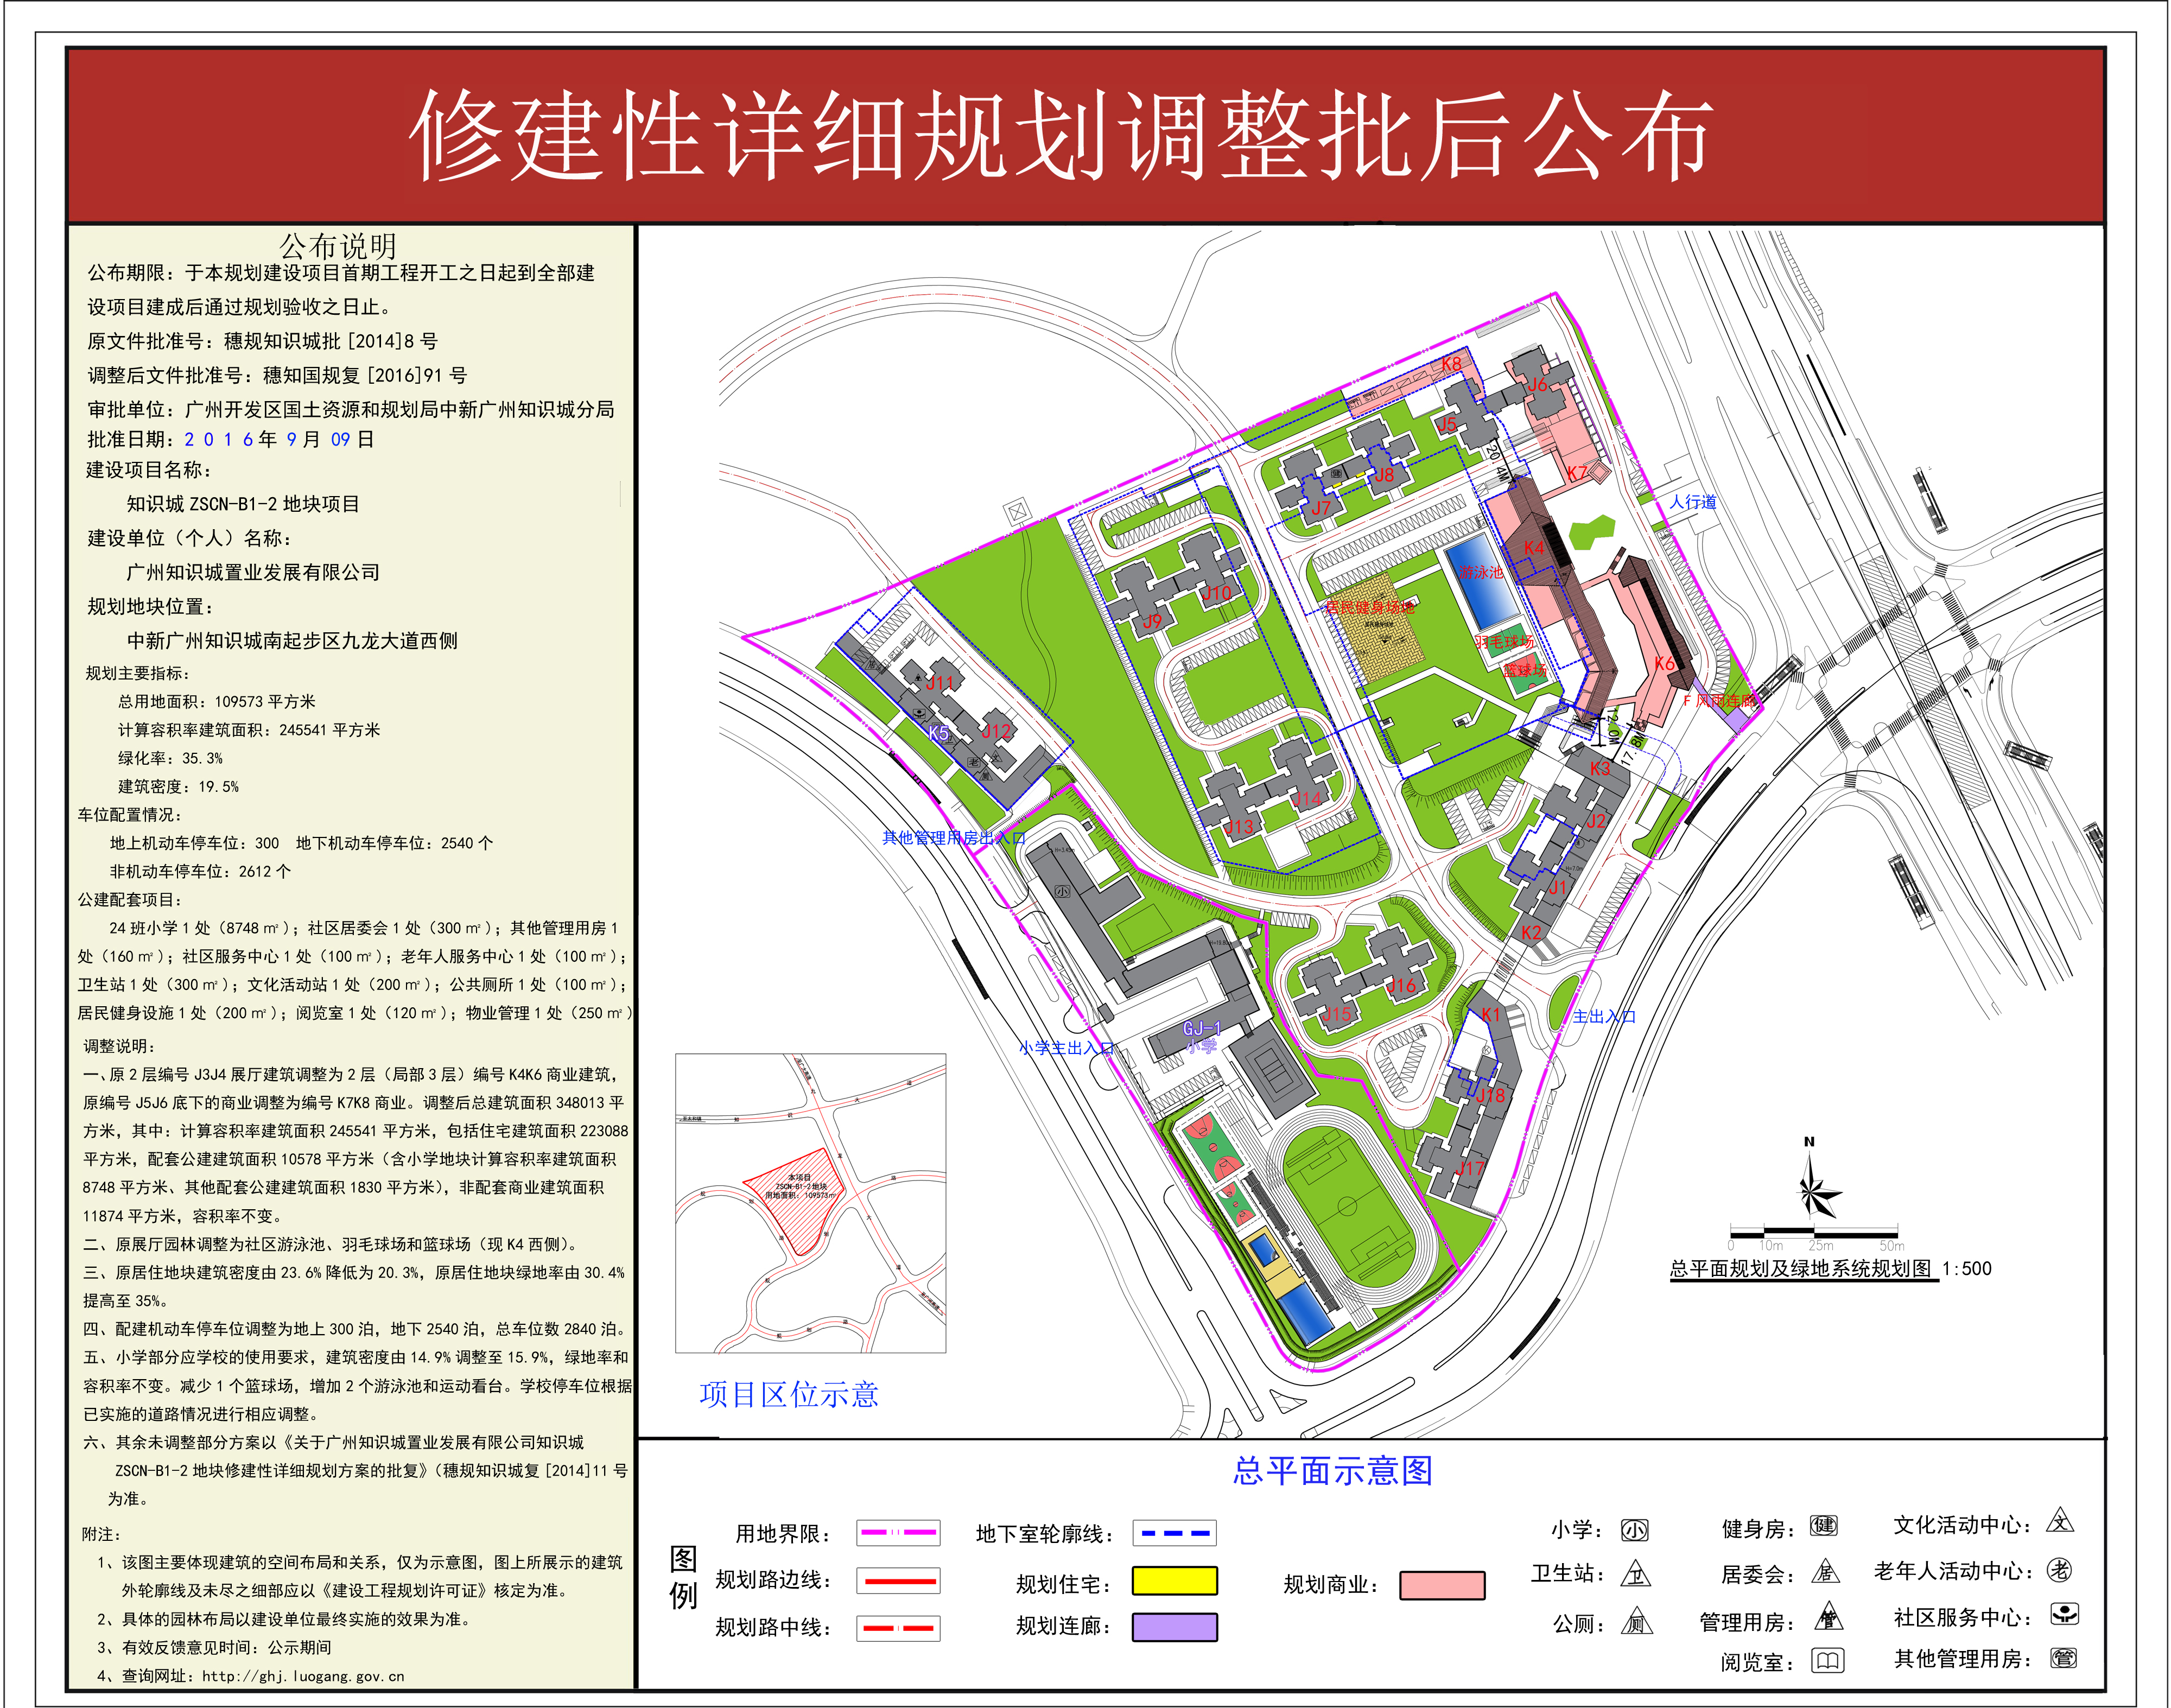 广州知识城置业发展有限公司关于南起步区ZSCN-B1-2地块修规调整批后公布.jpg